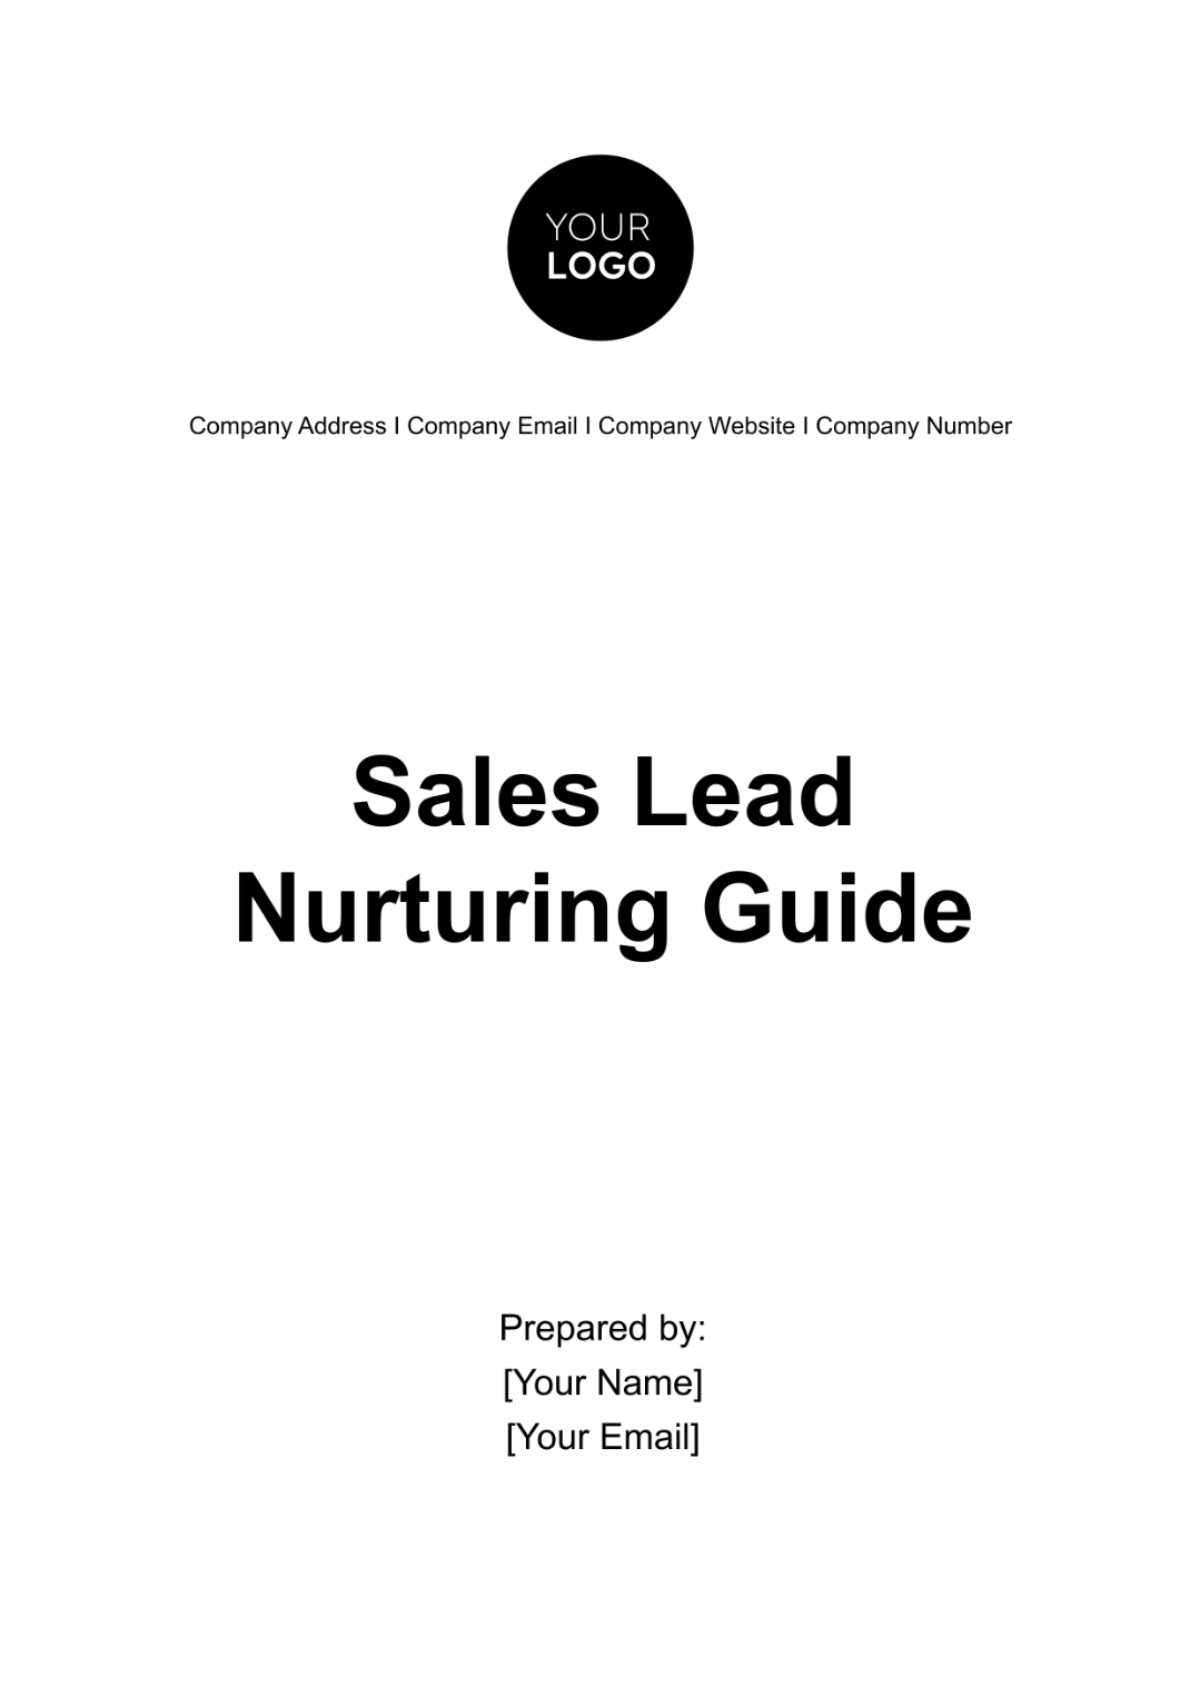 Sales Lead Nurturing Guide Template